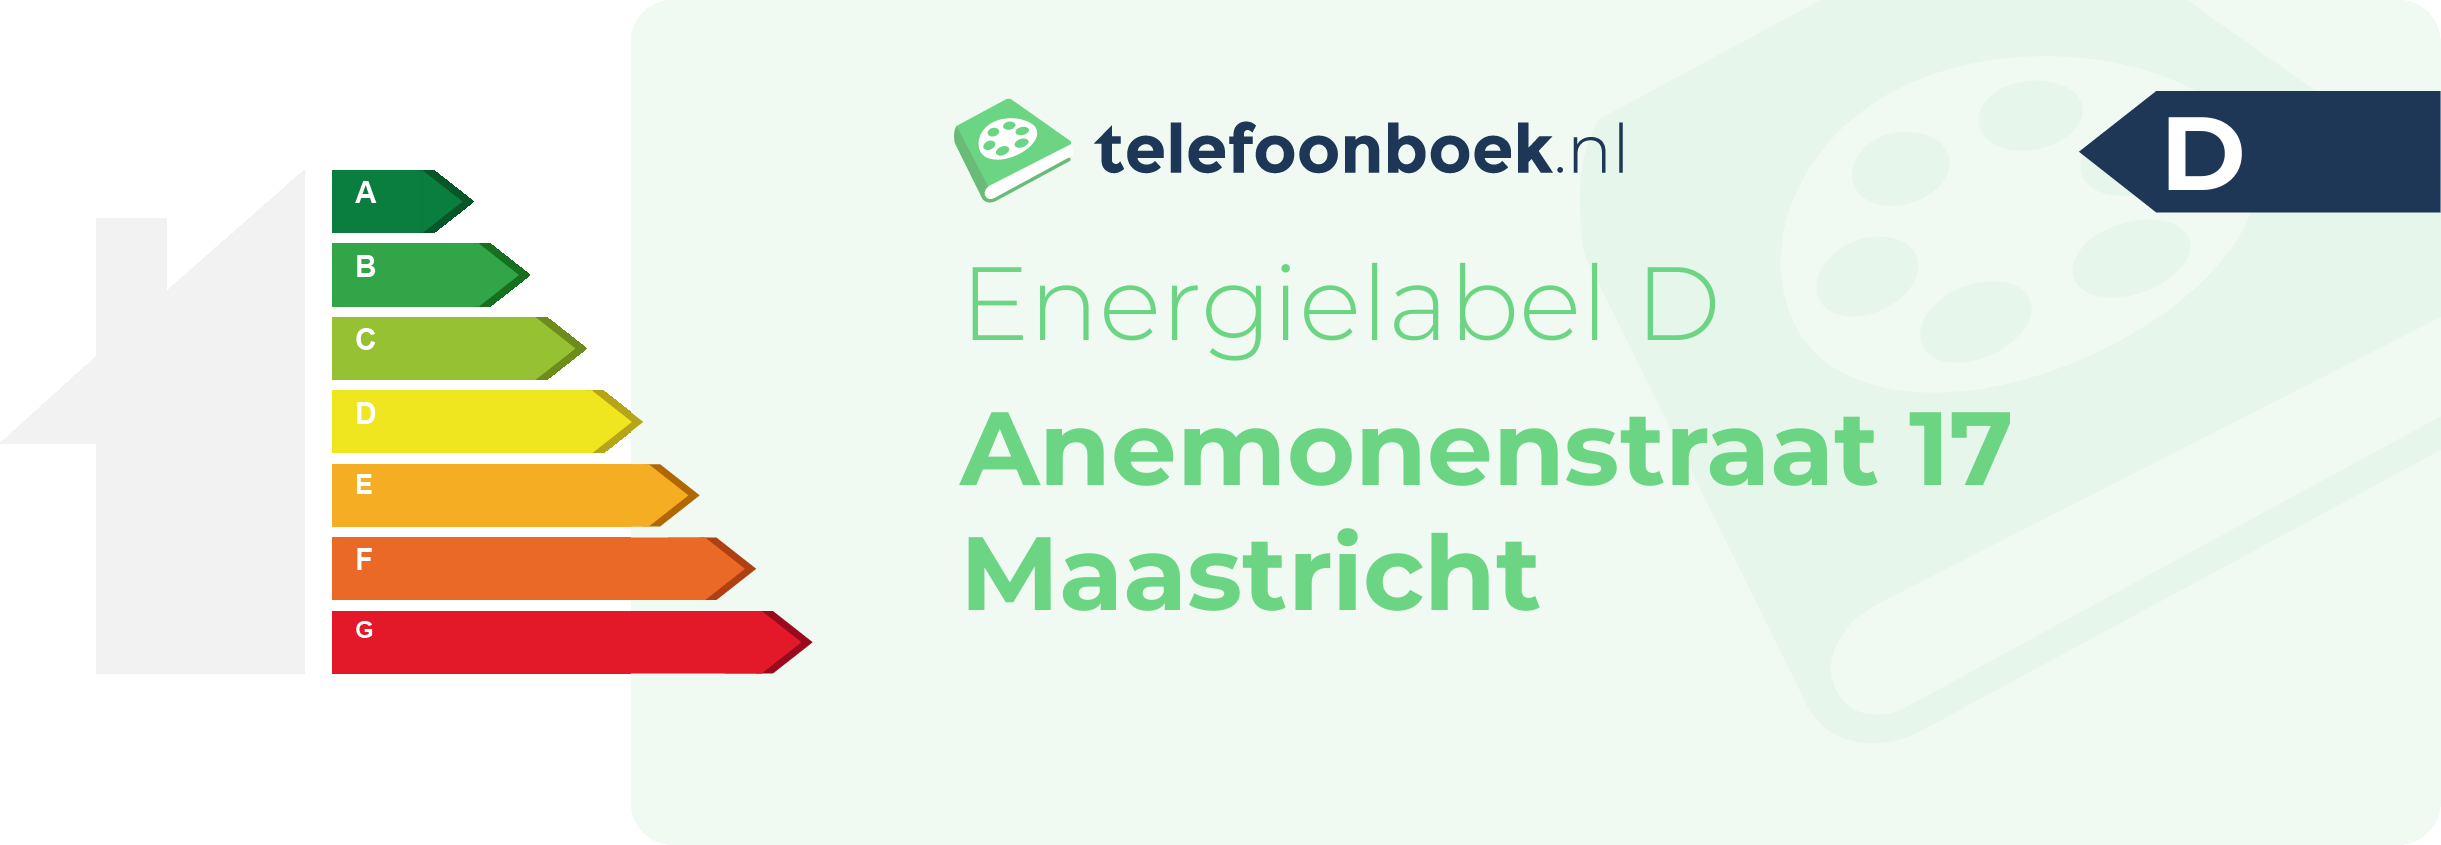 Energielabel Anemonenstraat 17 Maastricht